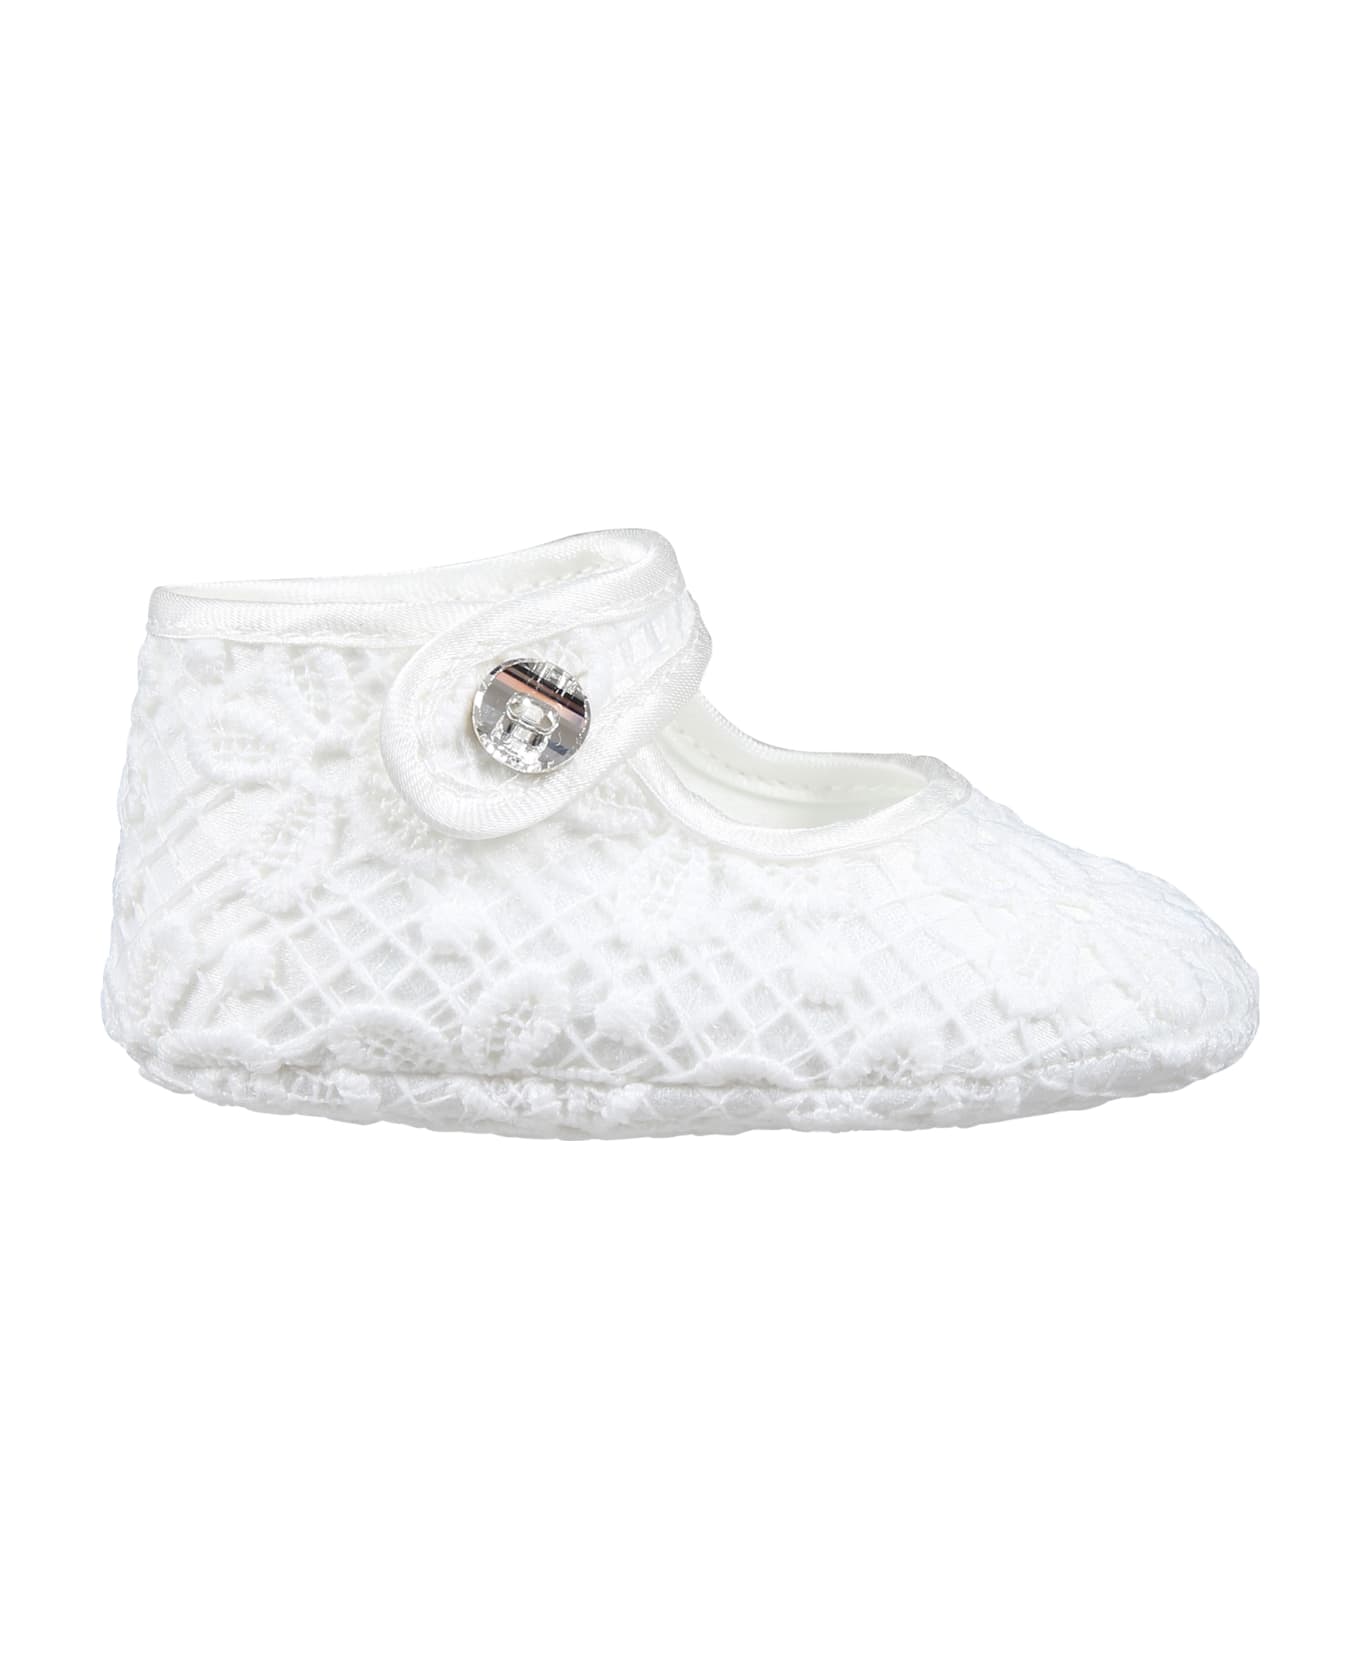 Monnalisa White Flat Shoes For Baby Girl In Dentelle Macramé - White